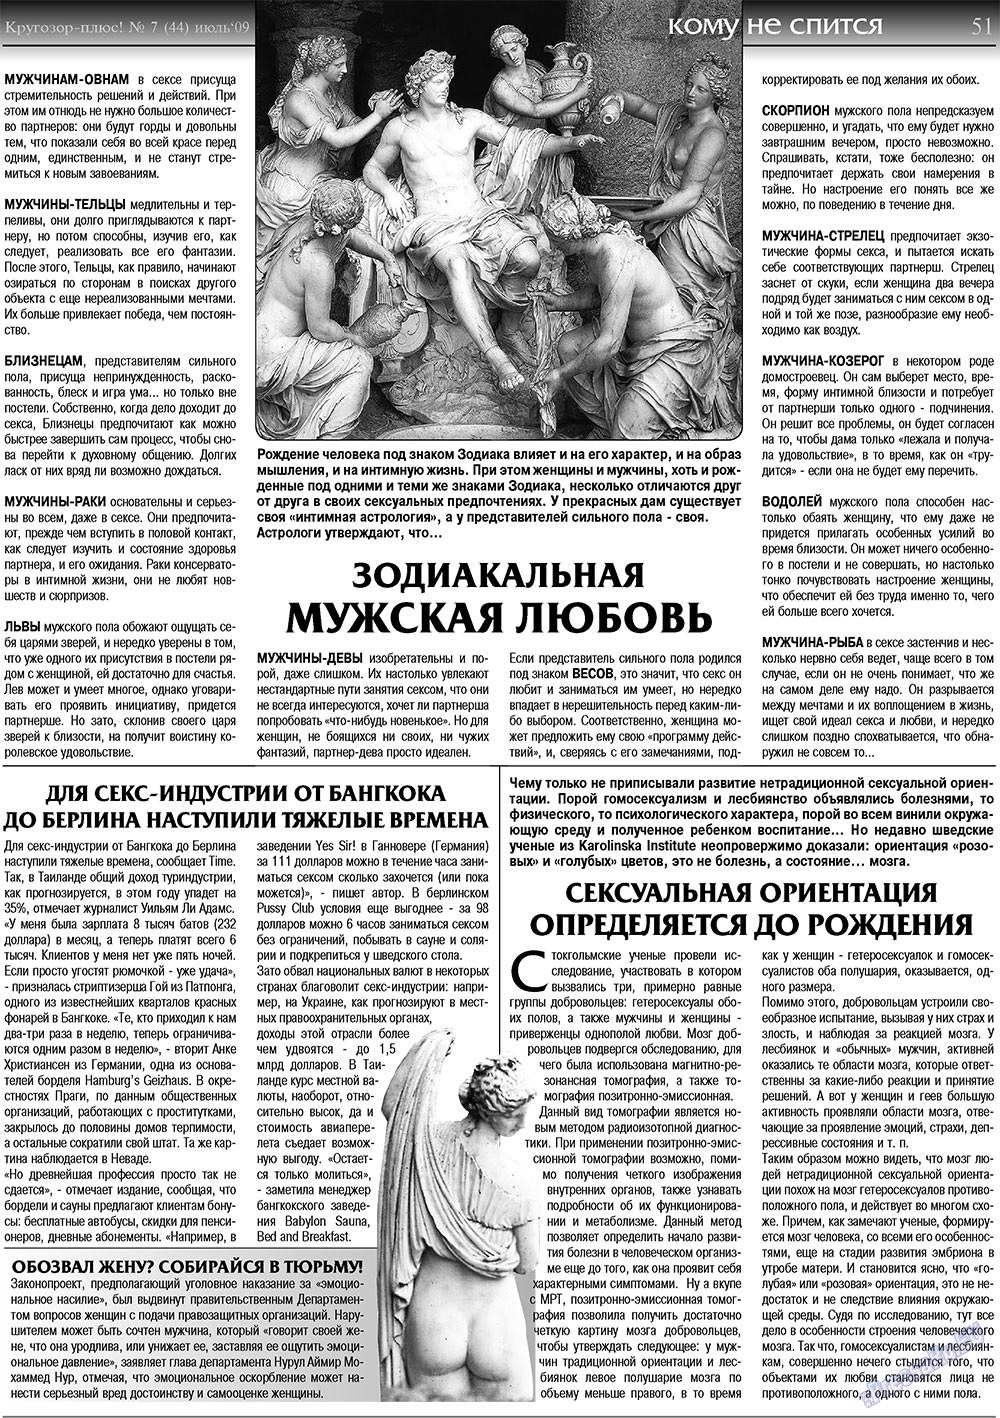 Кругозор плюс!, газета. 2009 №7 стр.51